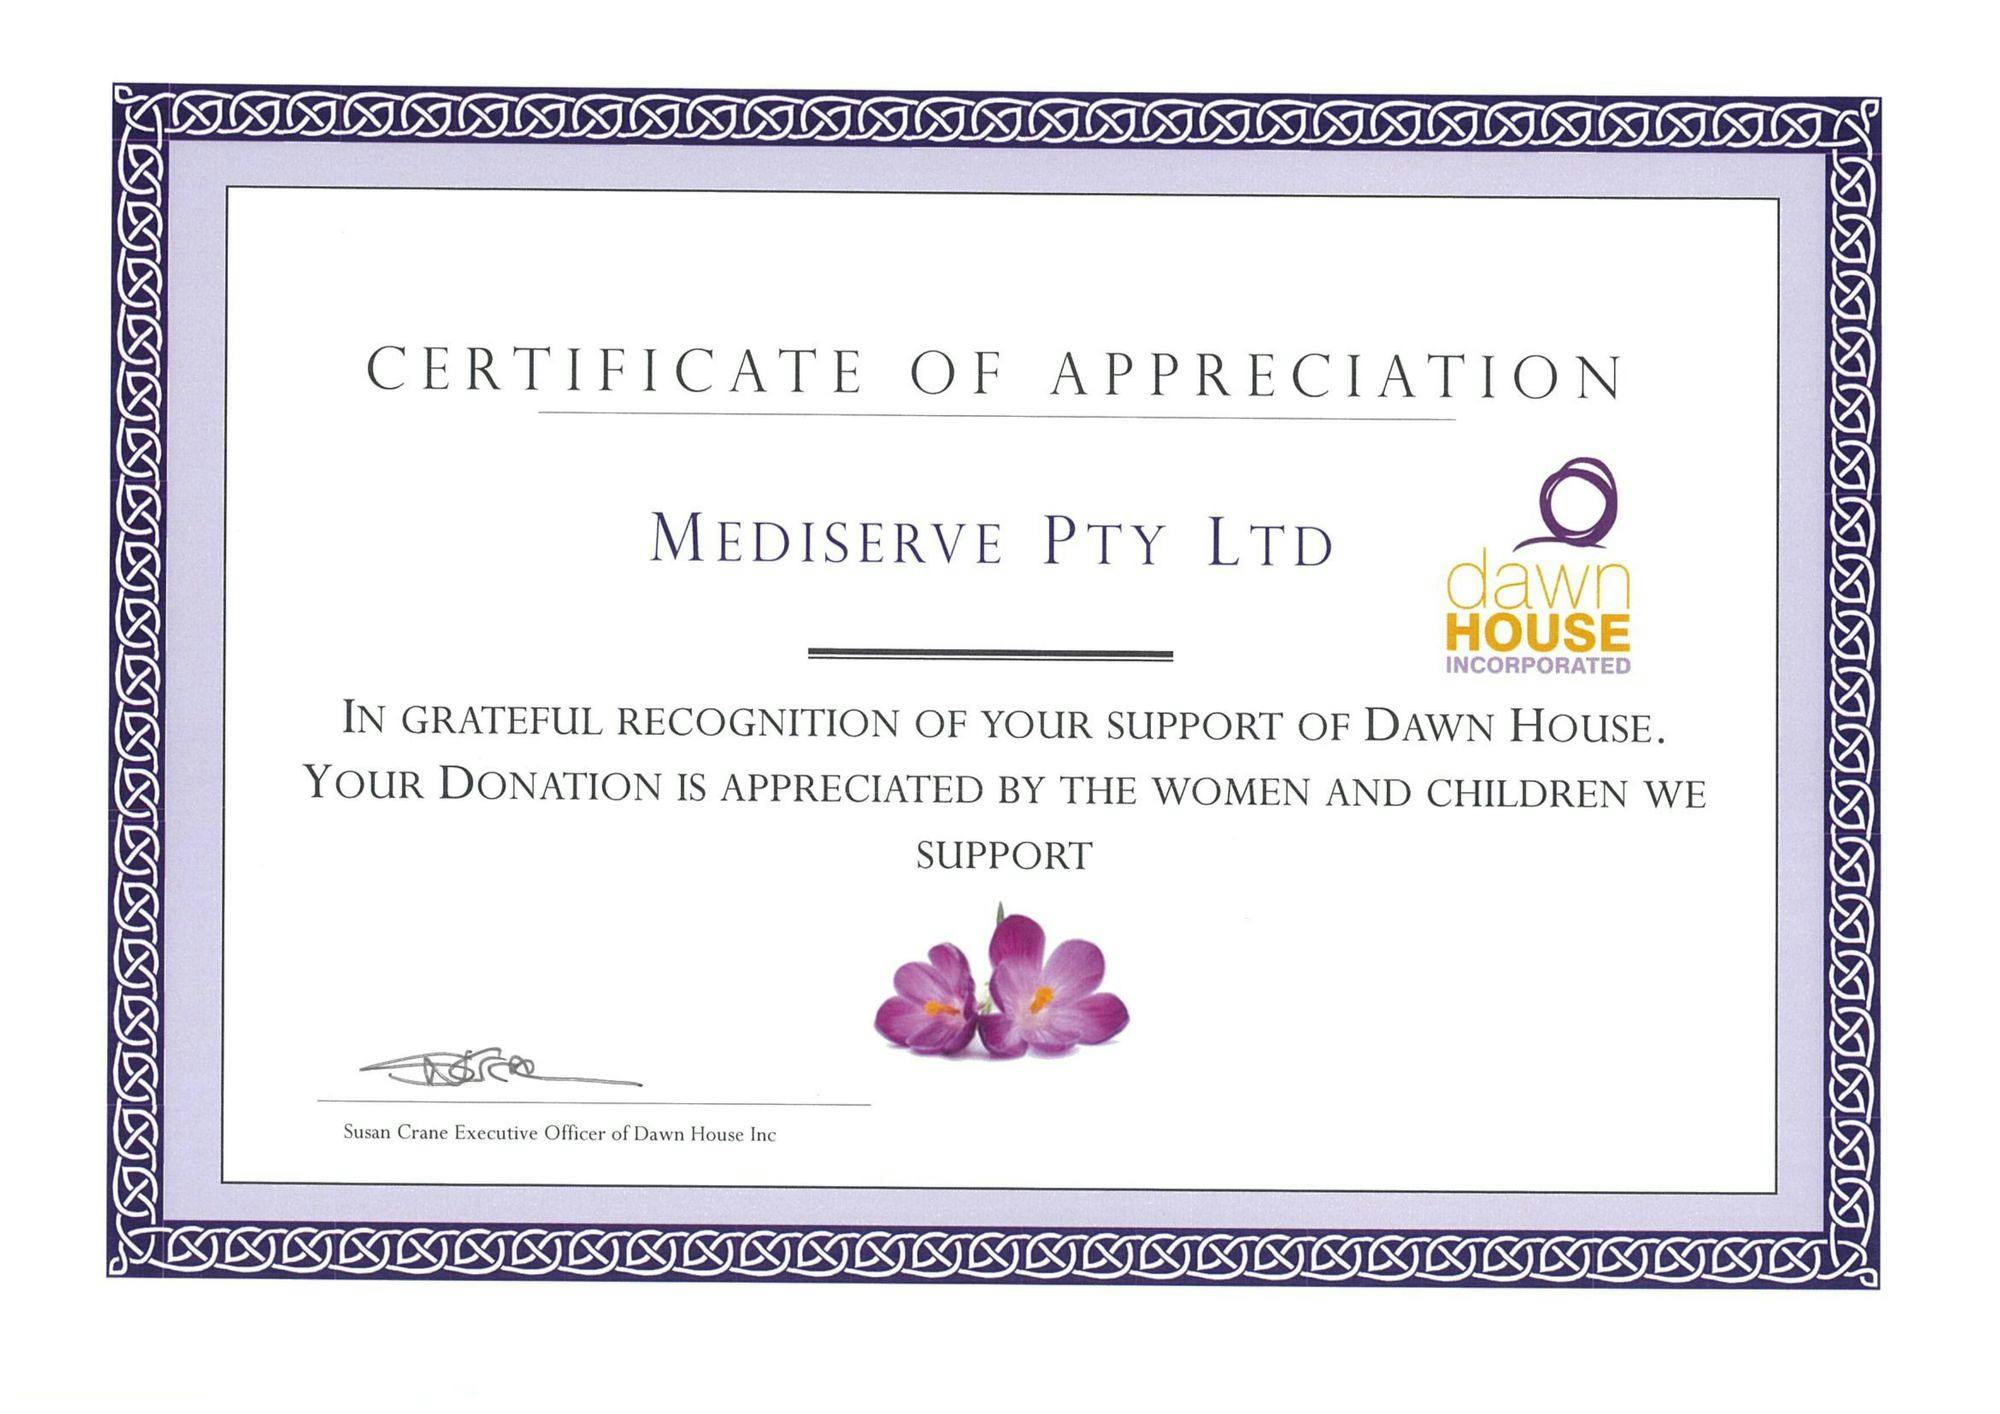 Dawn House Certificate of Appreciation